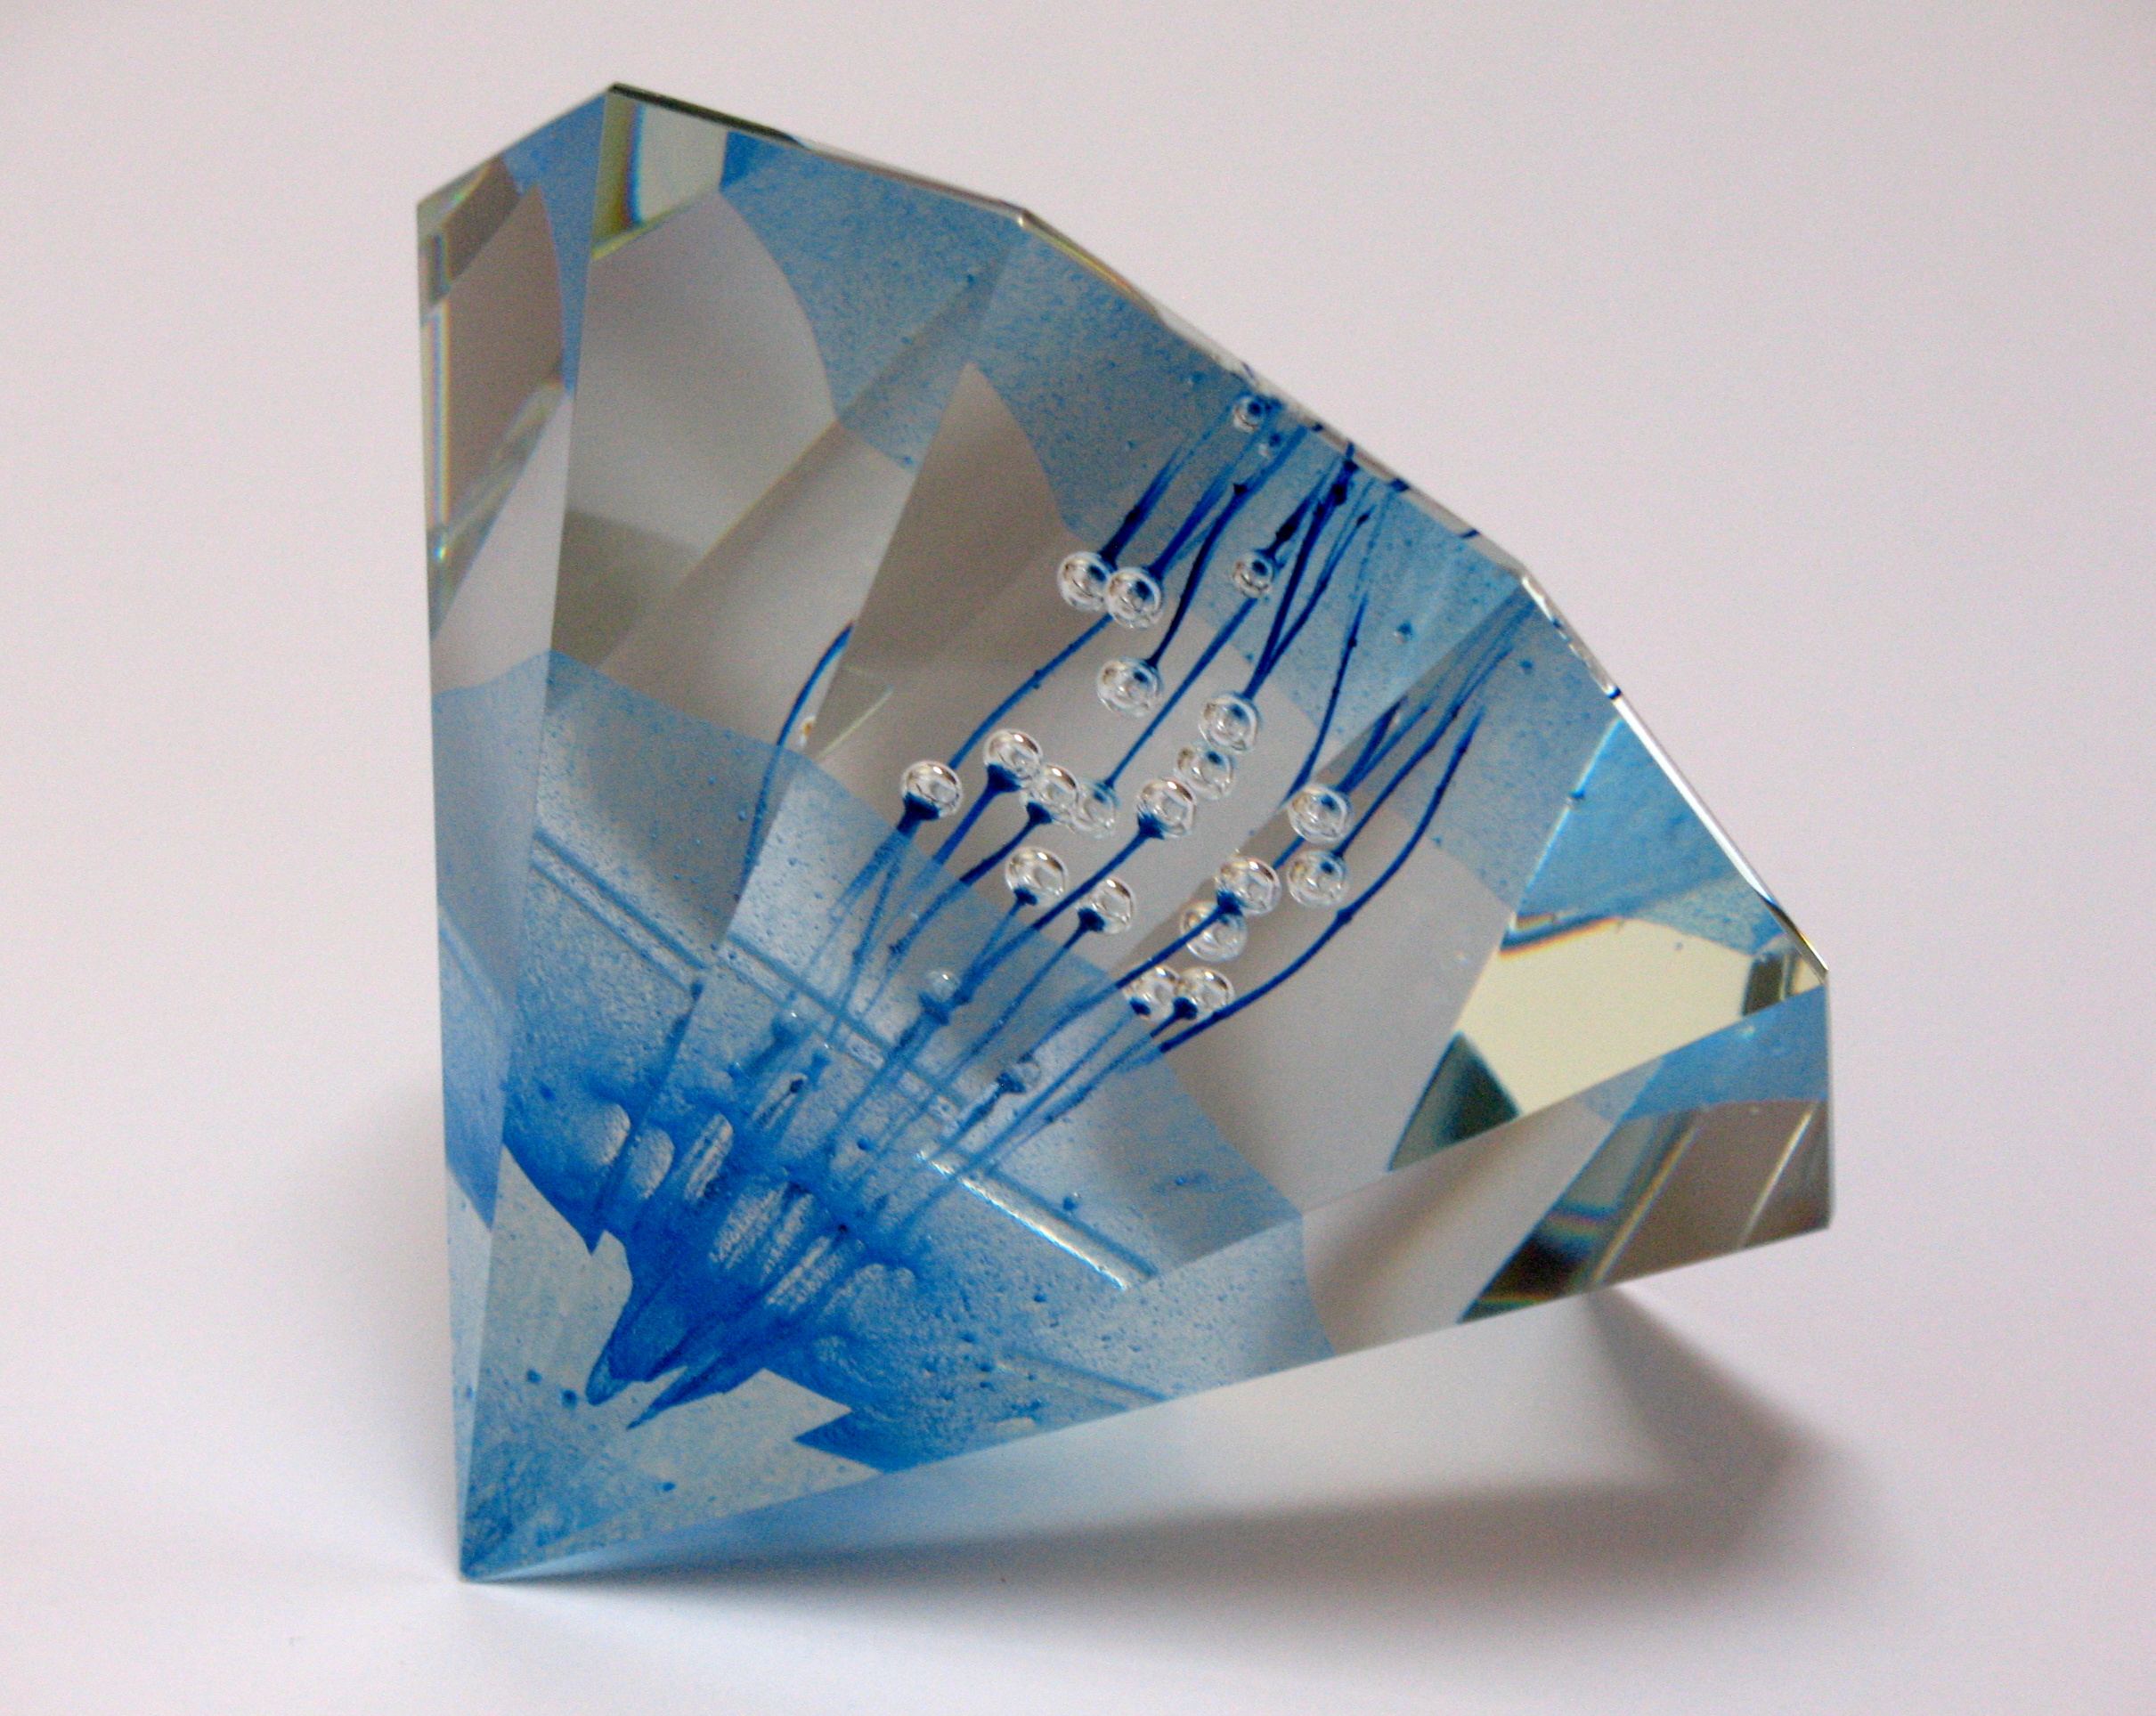 Těžítko, průměr 14 cm, olovnaté sklo, 2012